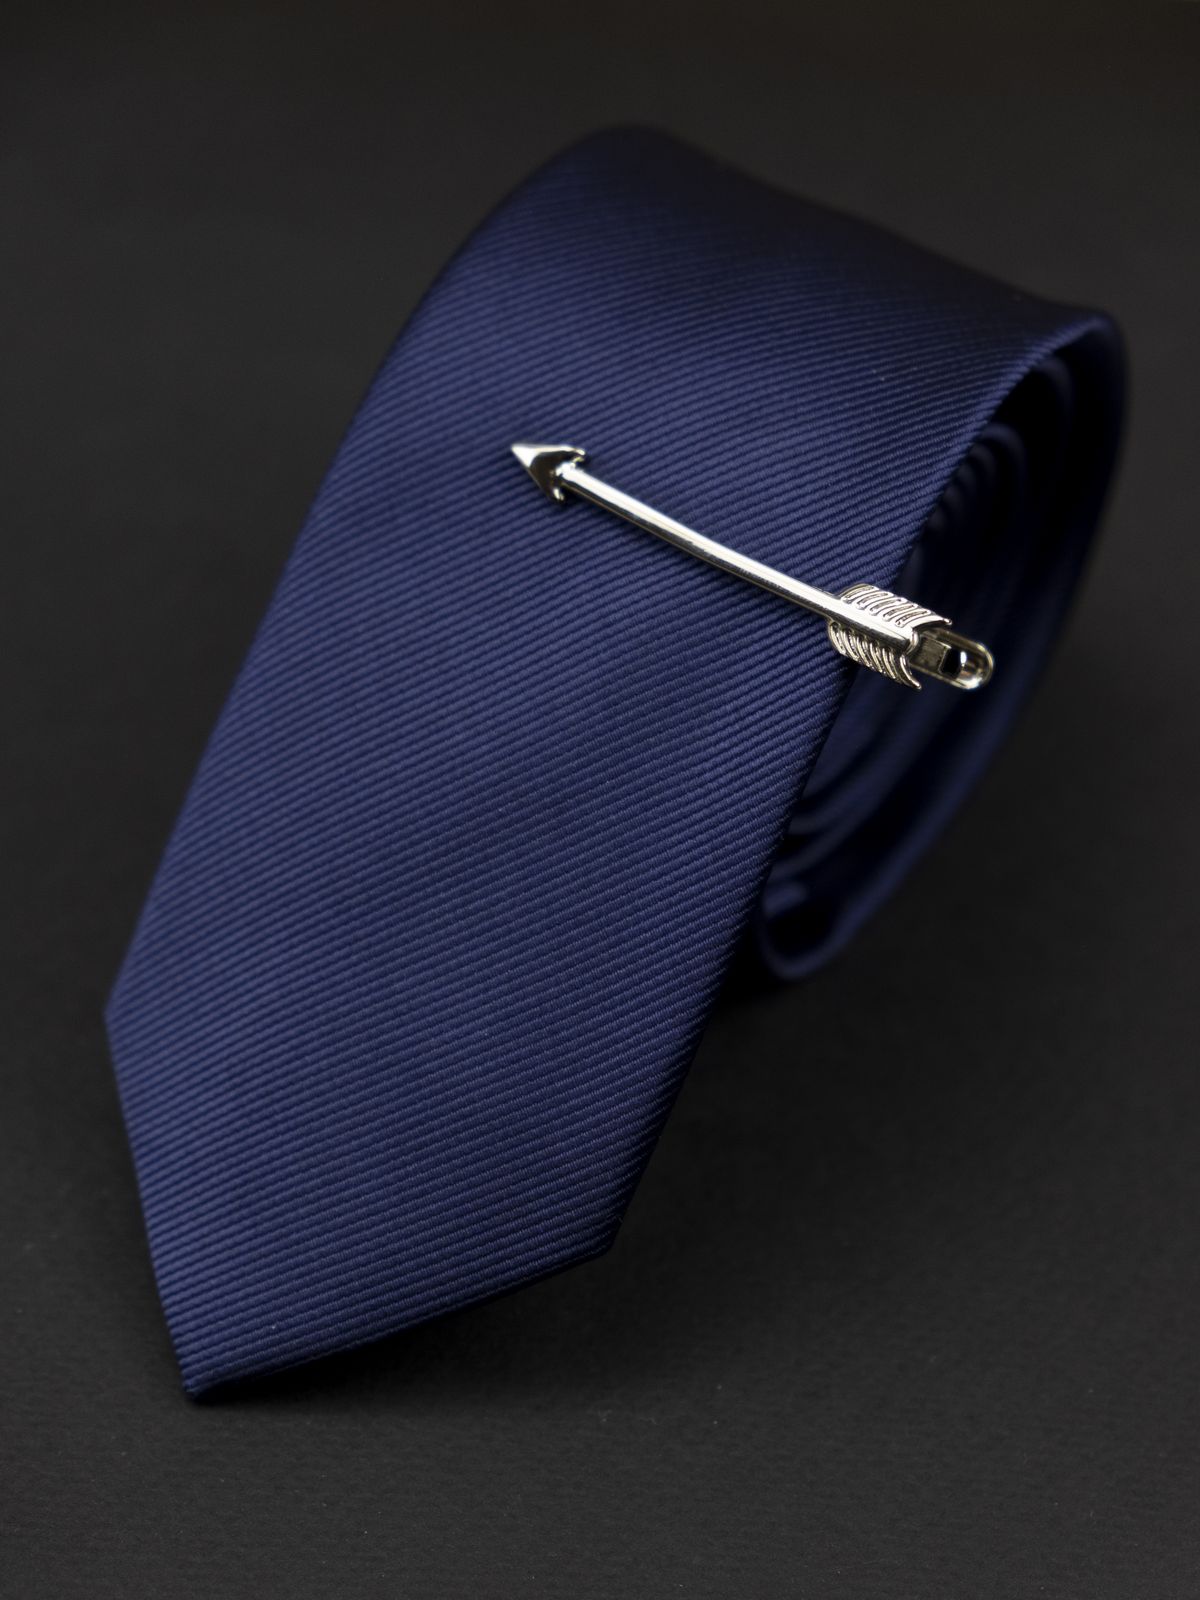 Зажим для галстука серебряная стрела купить. Состав: Медь Акрил, Цвет: Серебристый, Габариты: 0,7 см x 4,5 см, Вес: 6; 